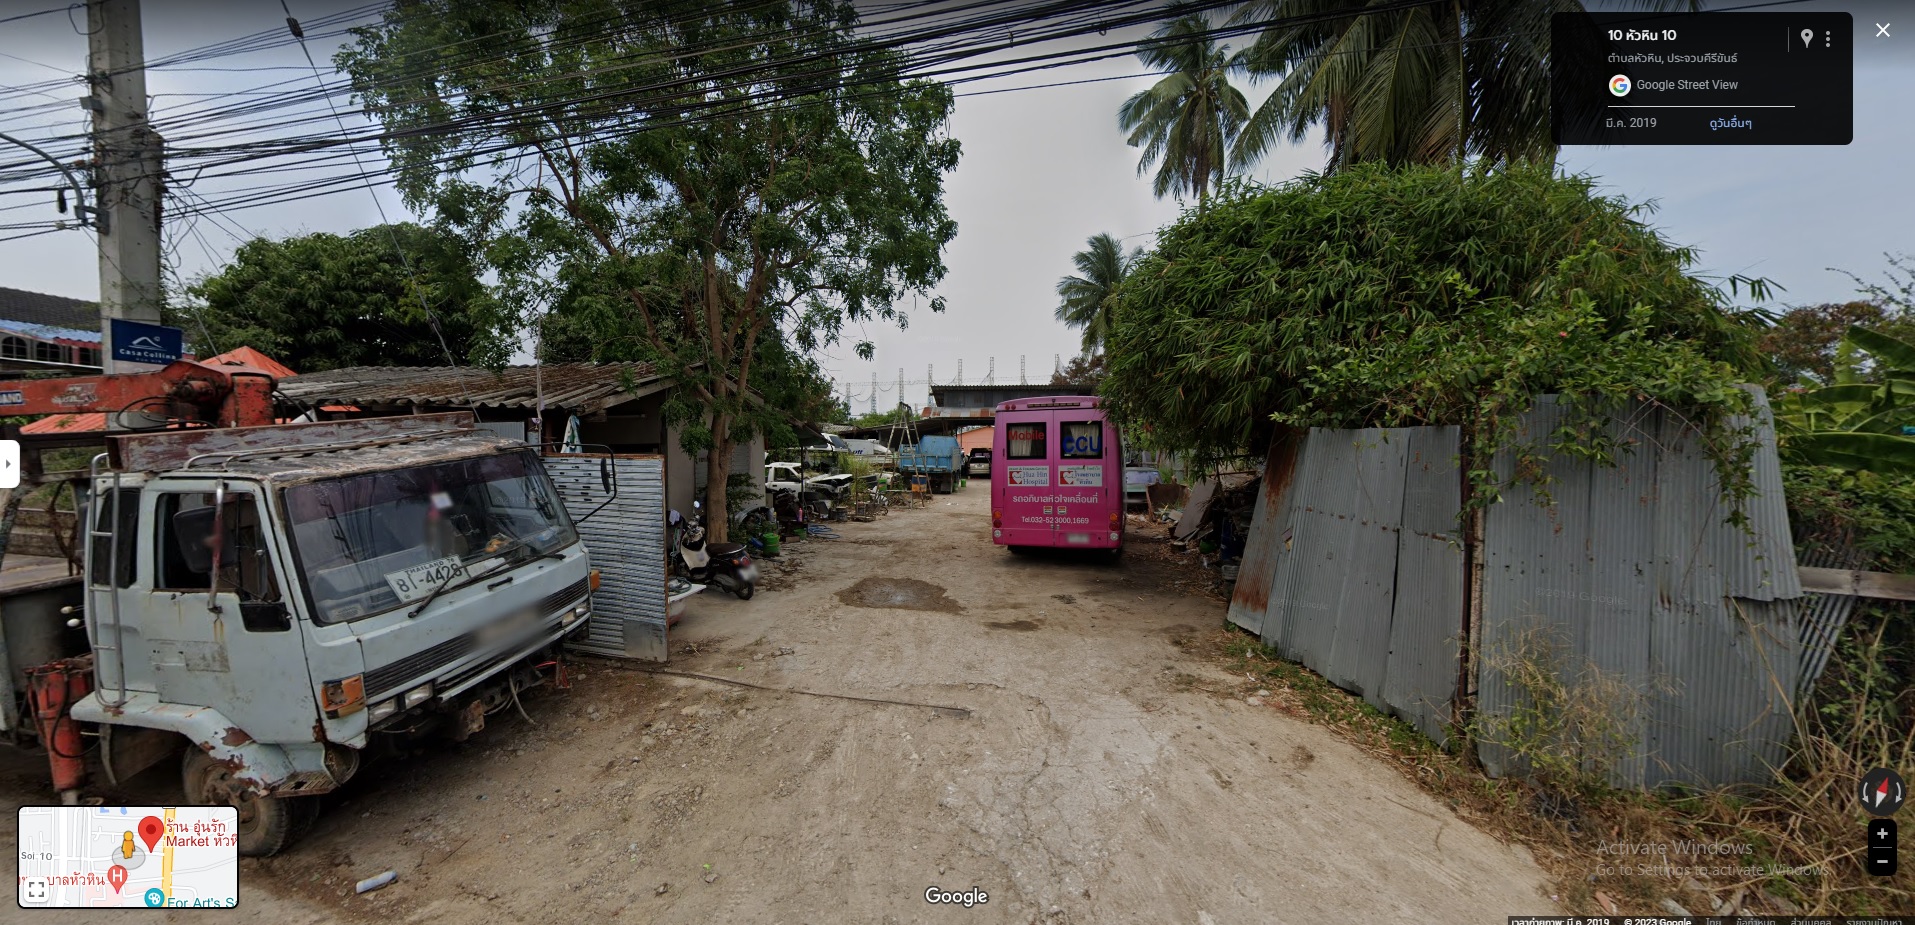 ที่ดินหัวหิน 222 ตารางวา แถม คอนโดที่กรุงเทพ1ห้อง Land for sale 222 Sqaure Wa Free Bangkok condominium 